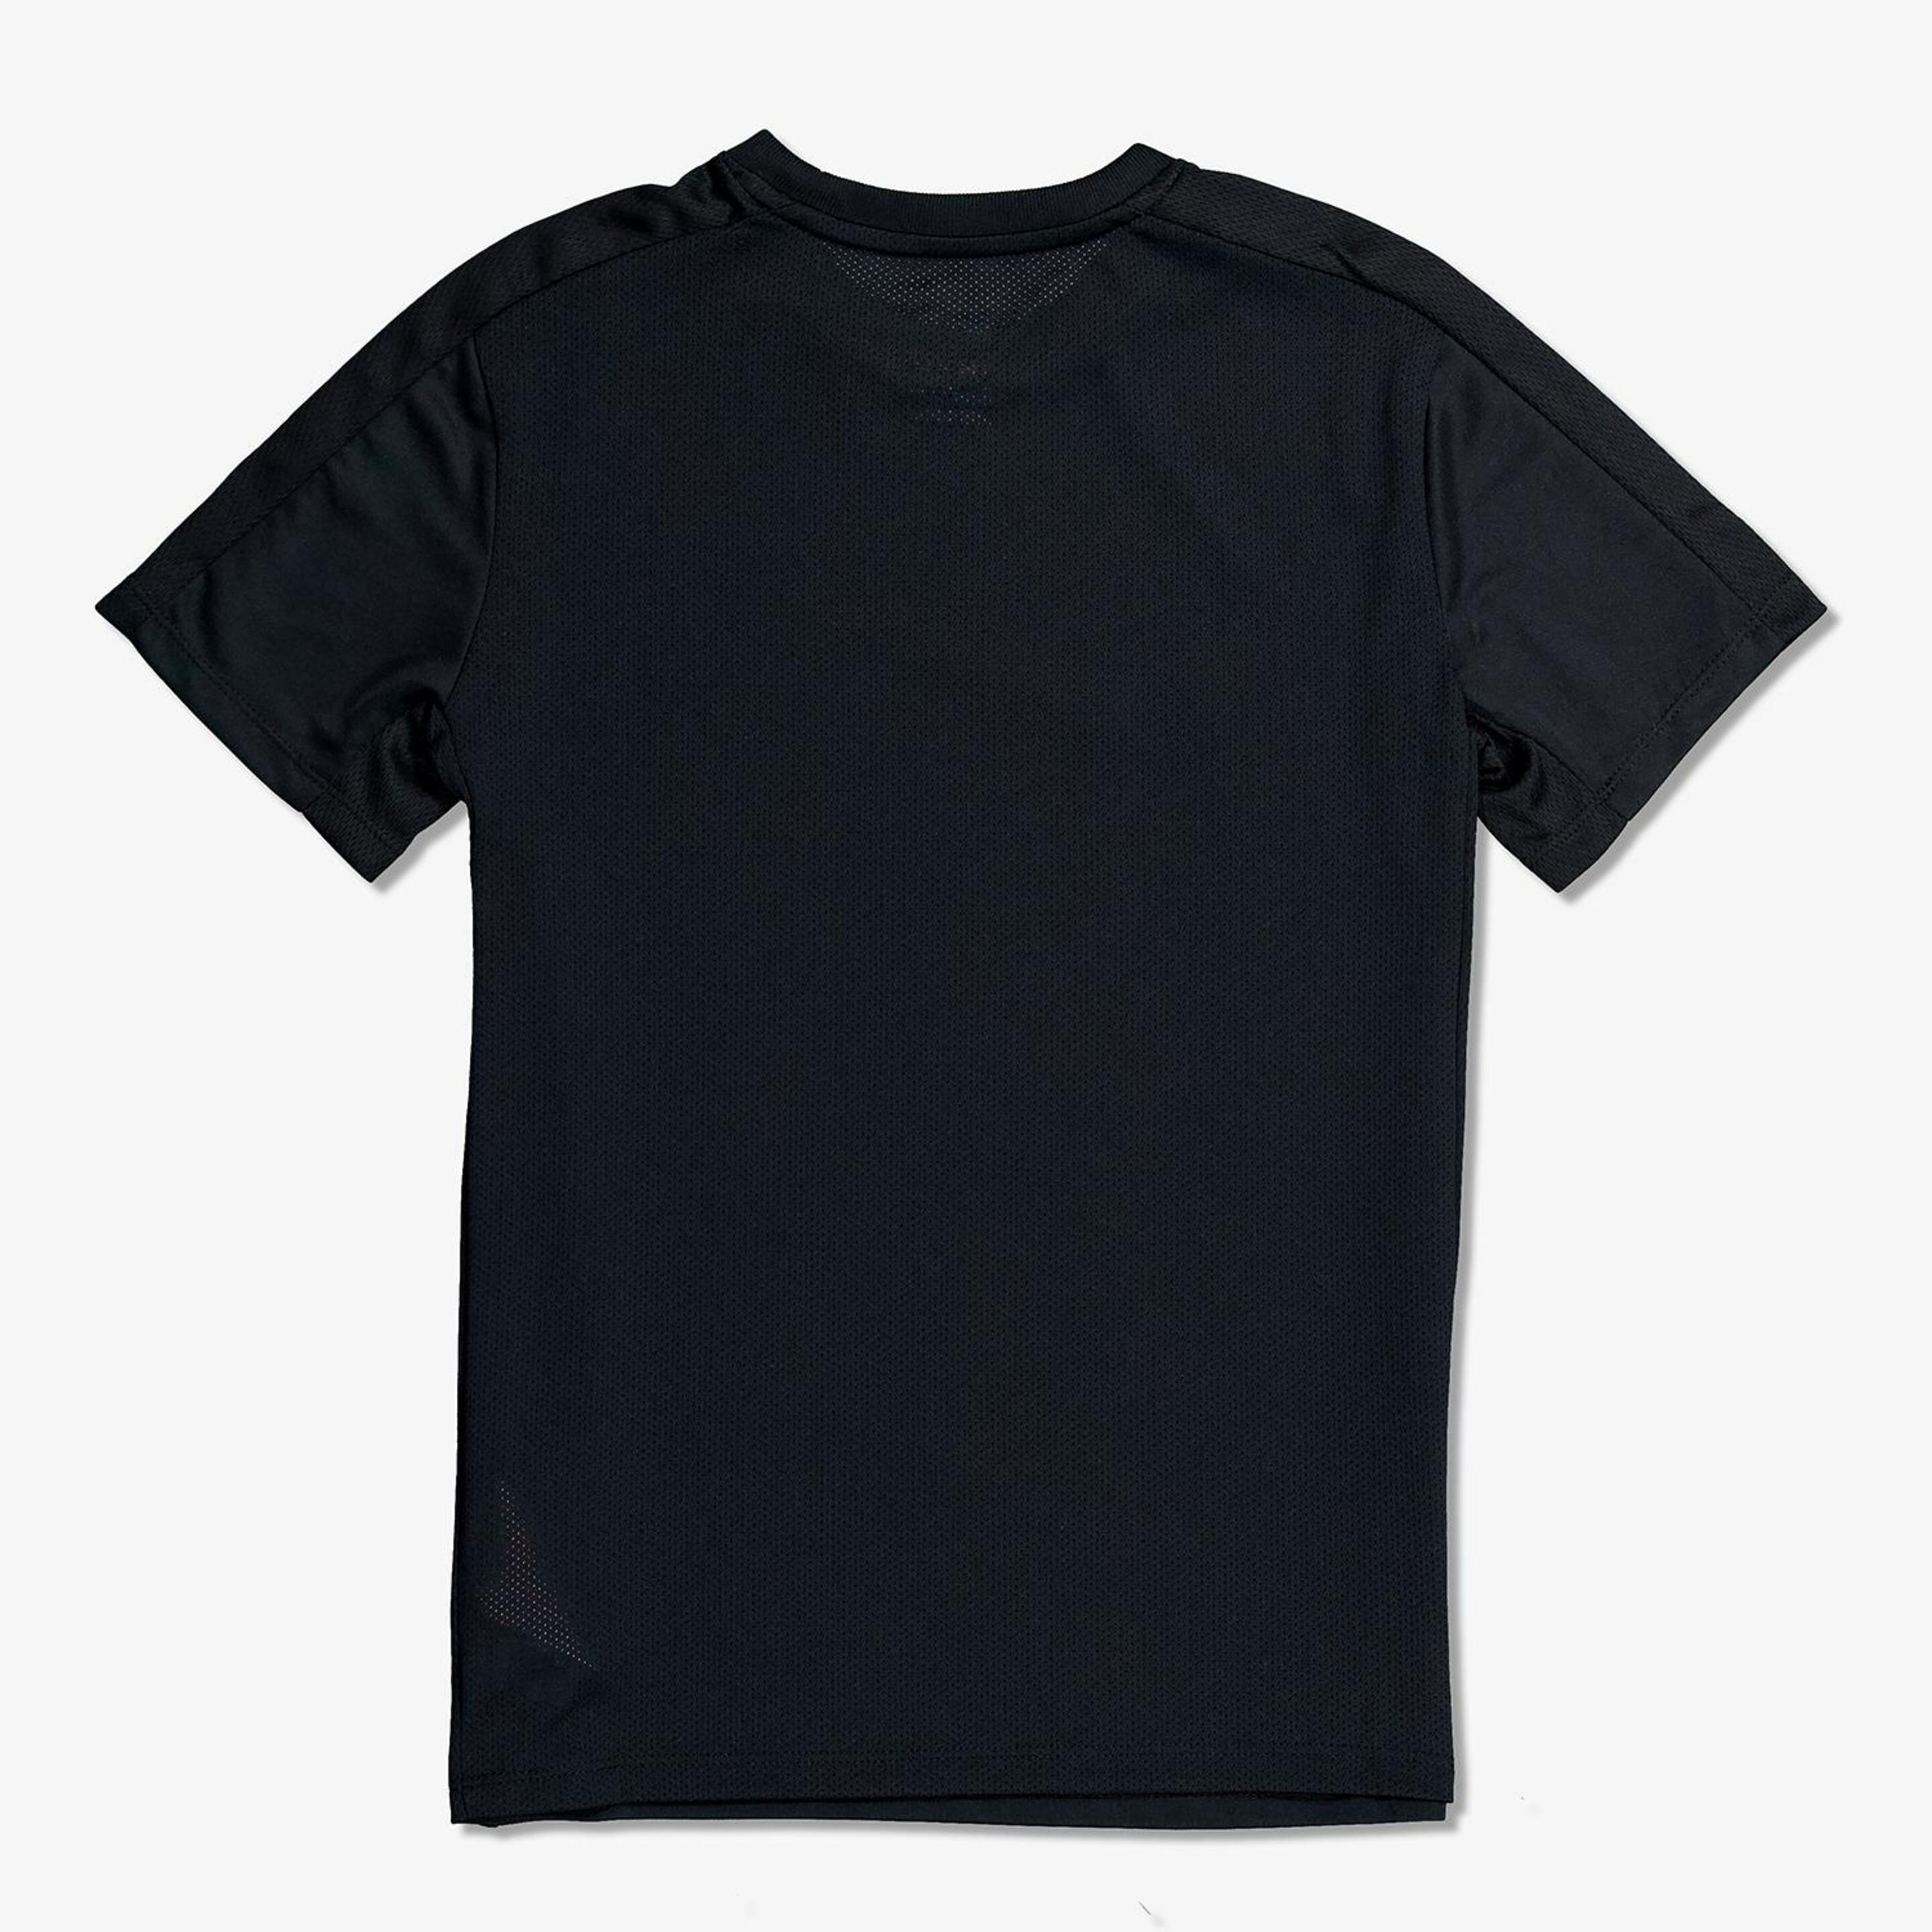 Camiseta Nike - Negro - Camiseta Running Niño